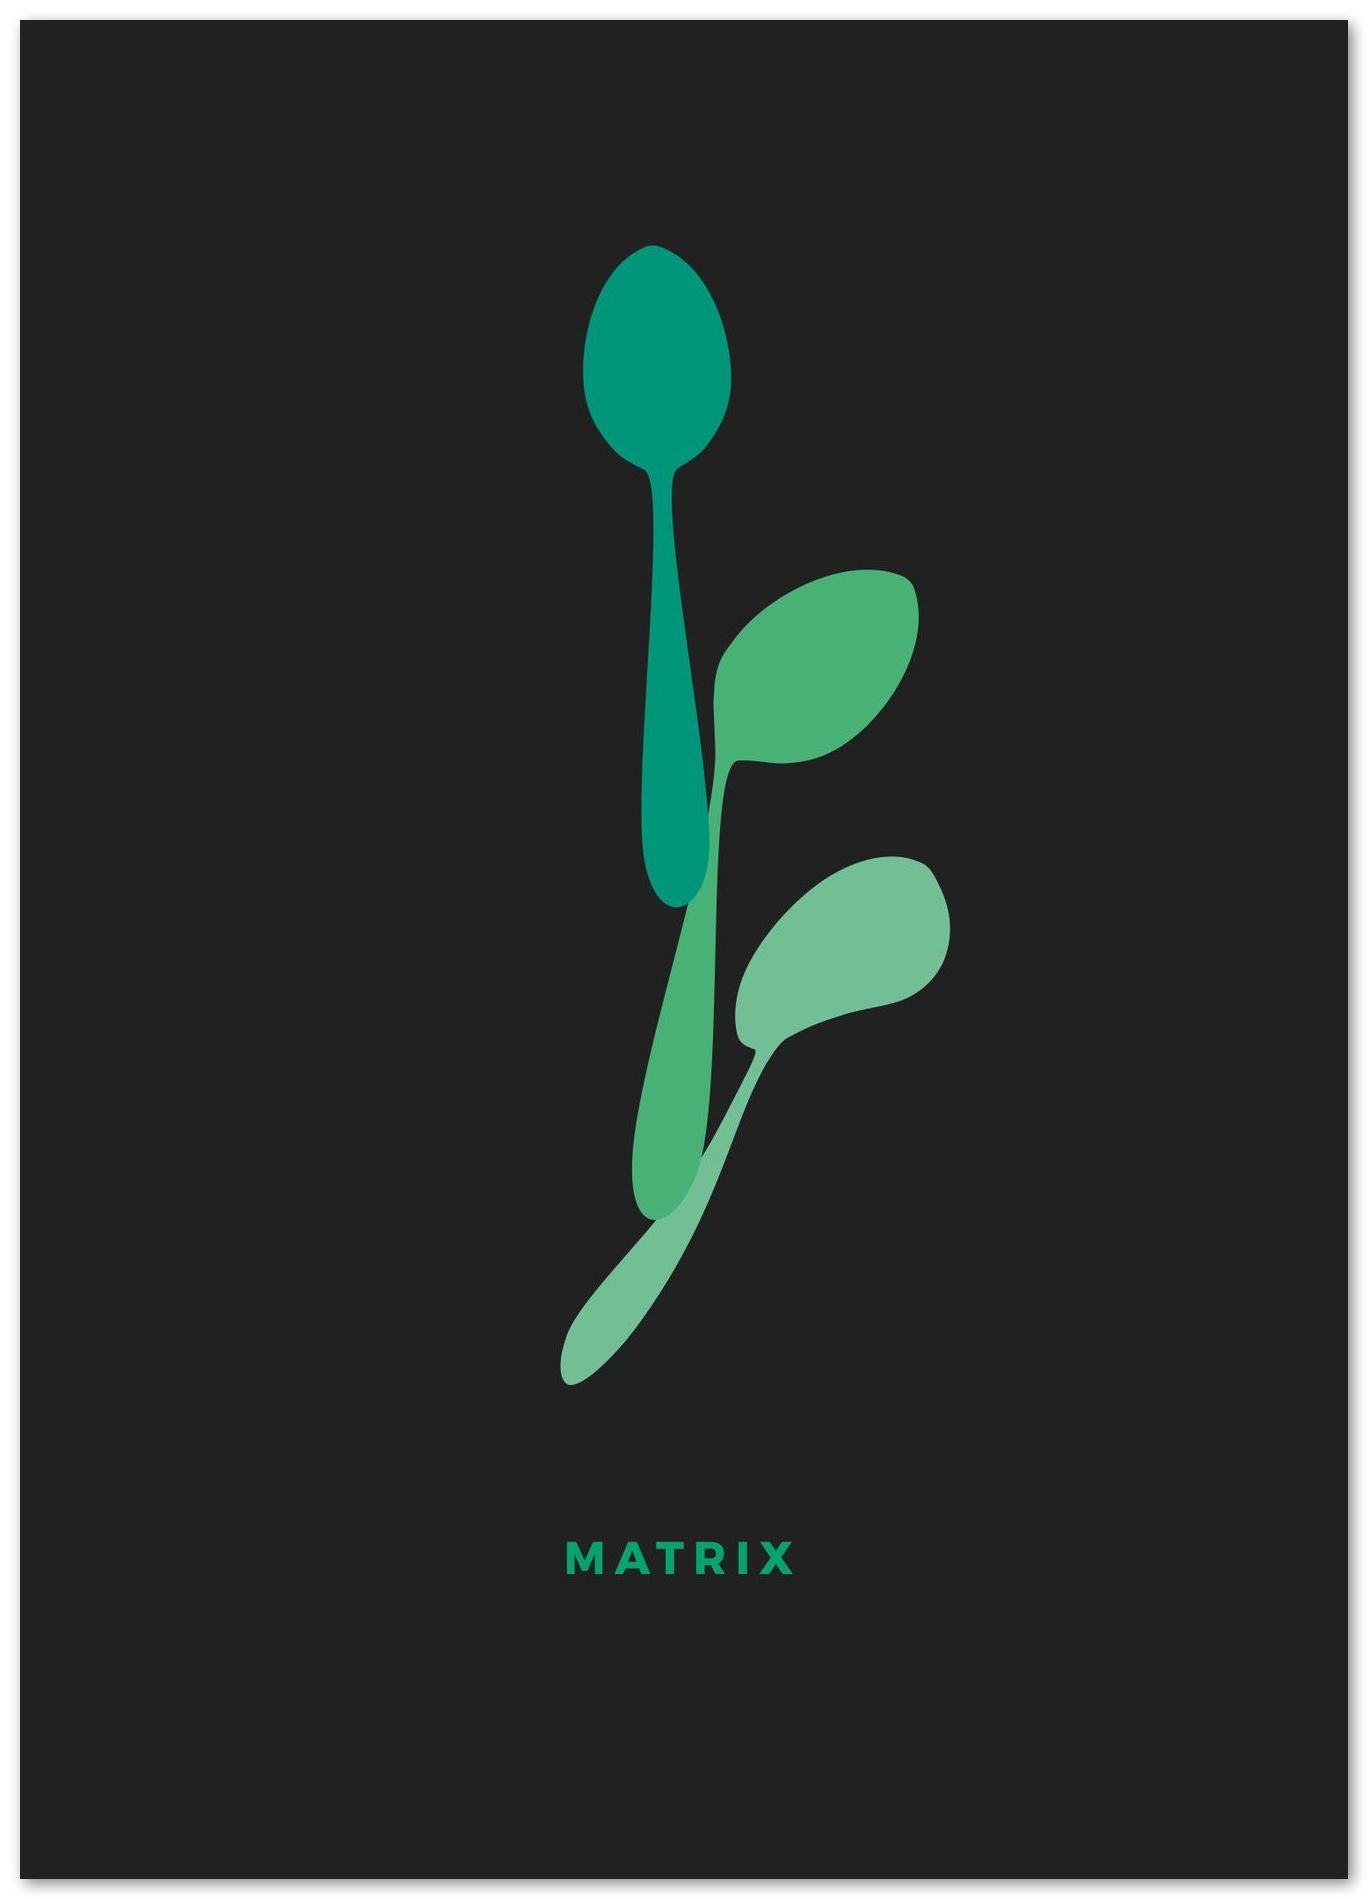 Matrix - The Spoon - @donluisjimenez